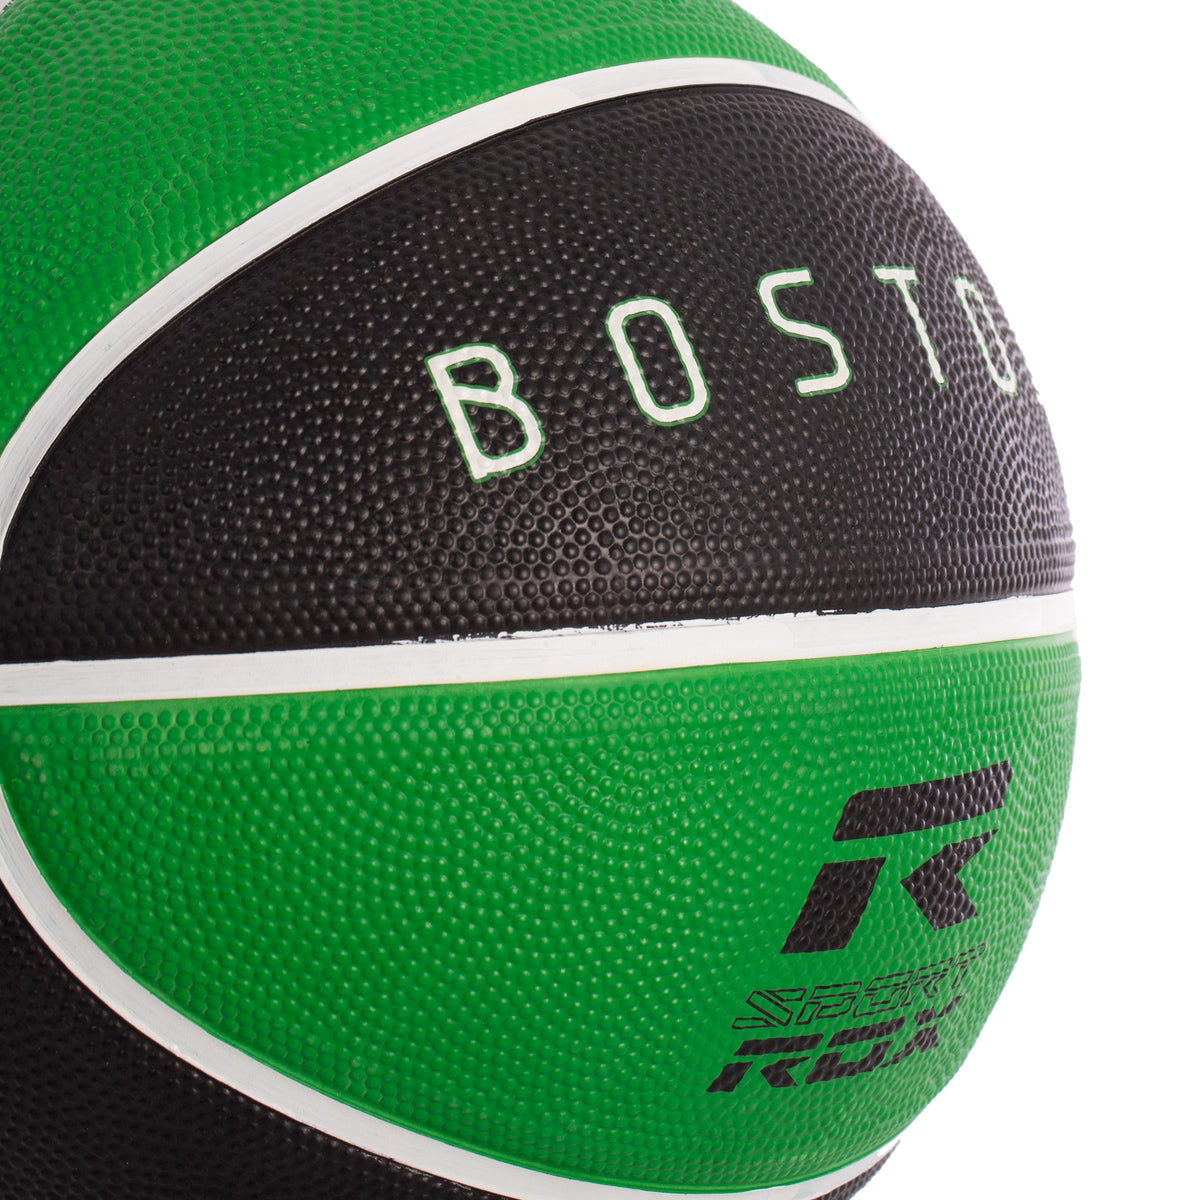 Balón Baloncesto Nylon Rox Boston